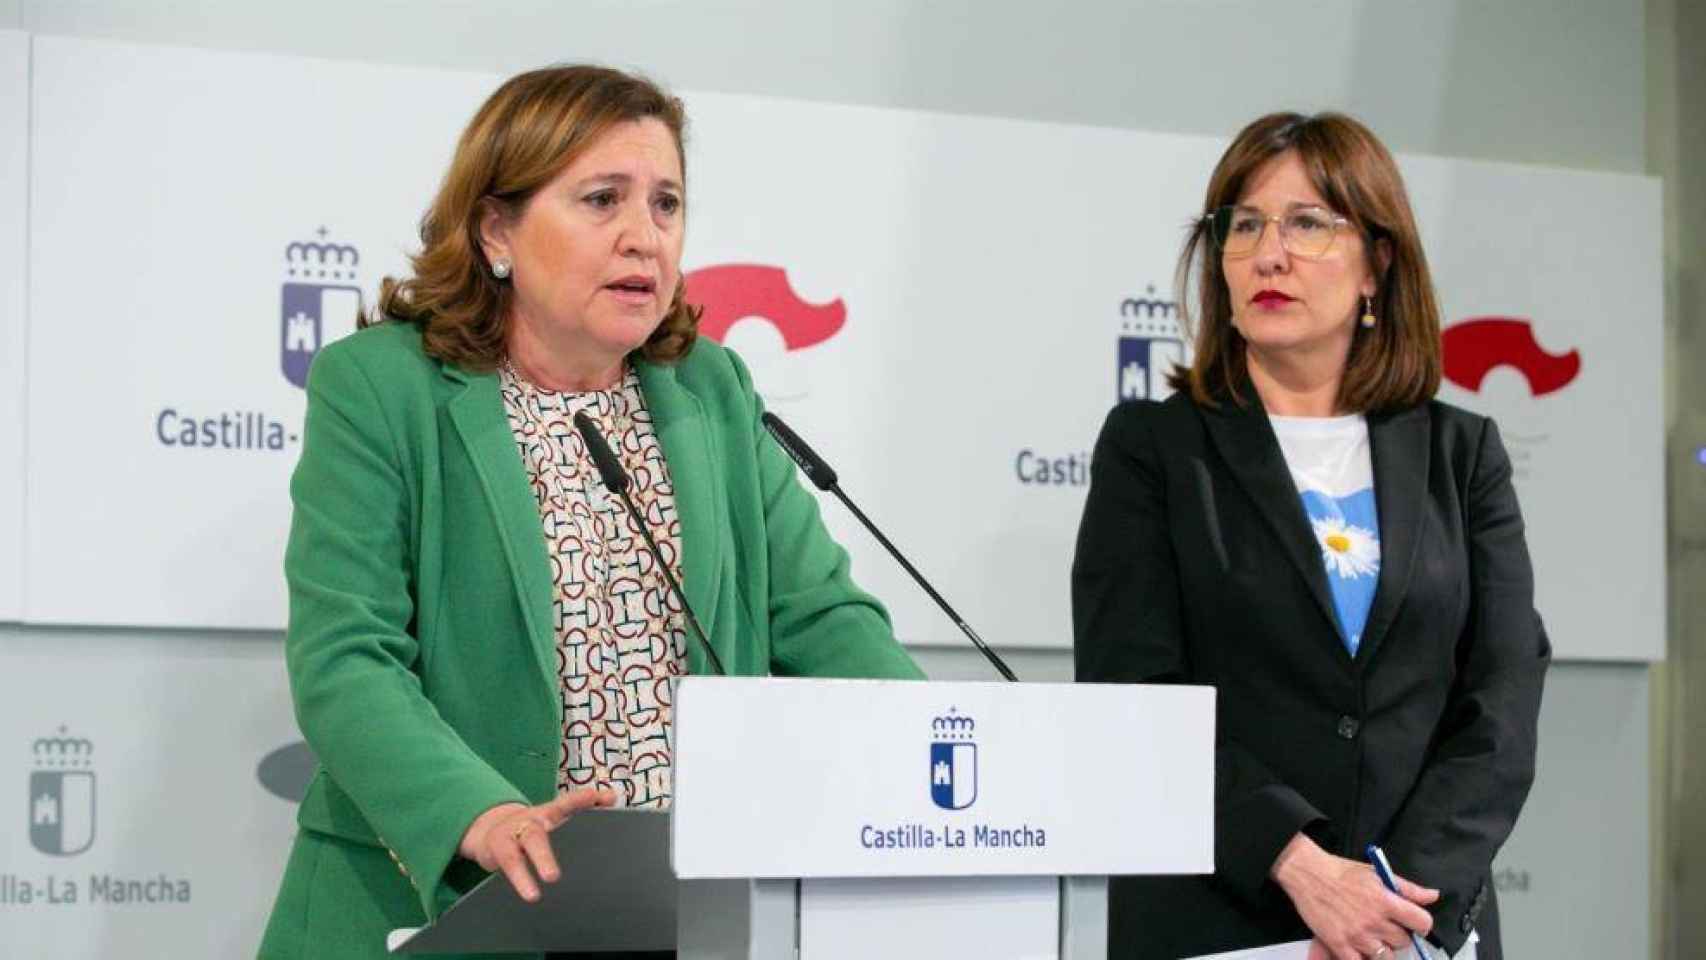 La consejera de Educación, Rosa Ana Rodríguez, y la portavoz, Blanca Fernández, en rueda de prensa tras el Consejo de Gobierno extraordinario.